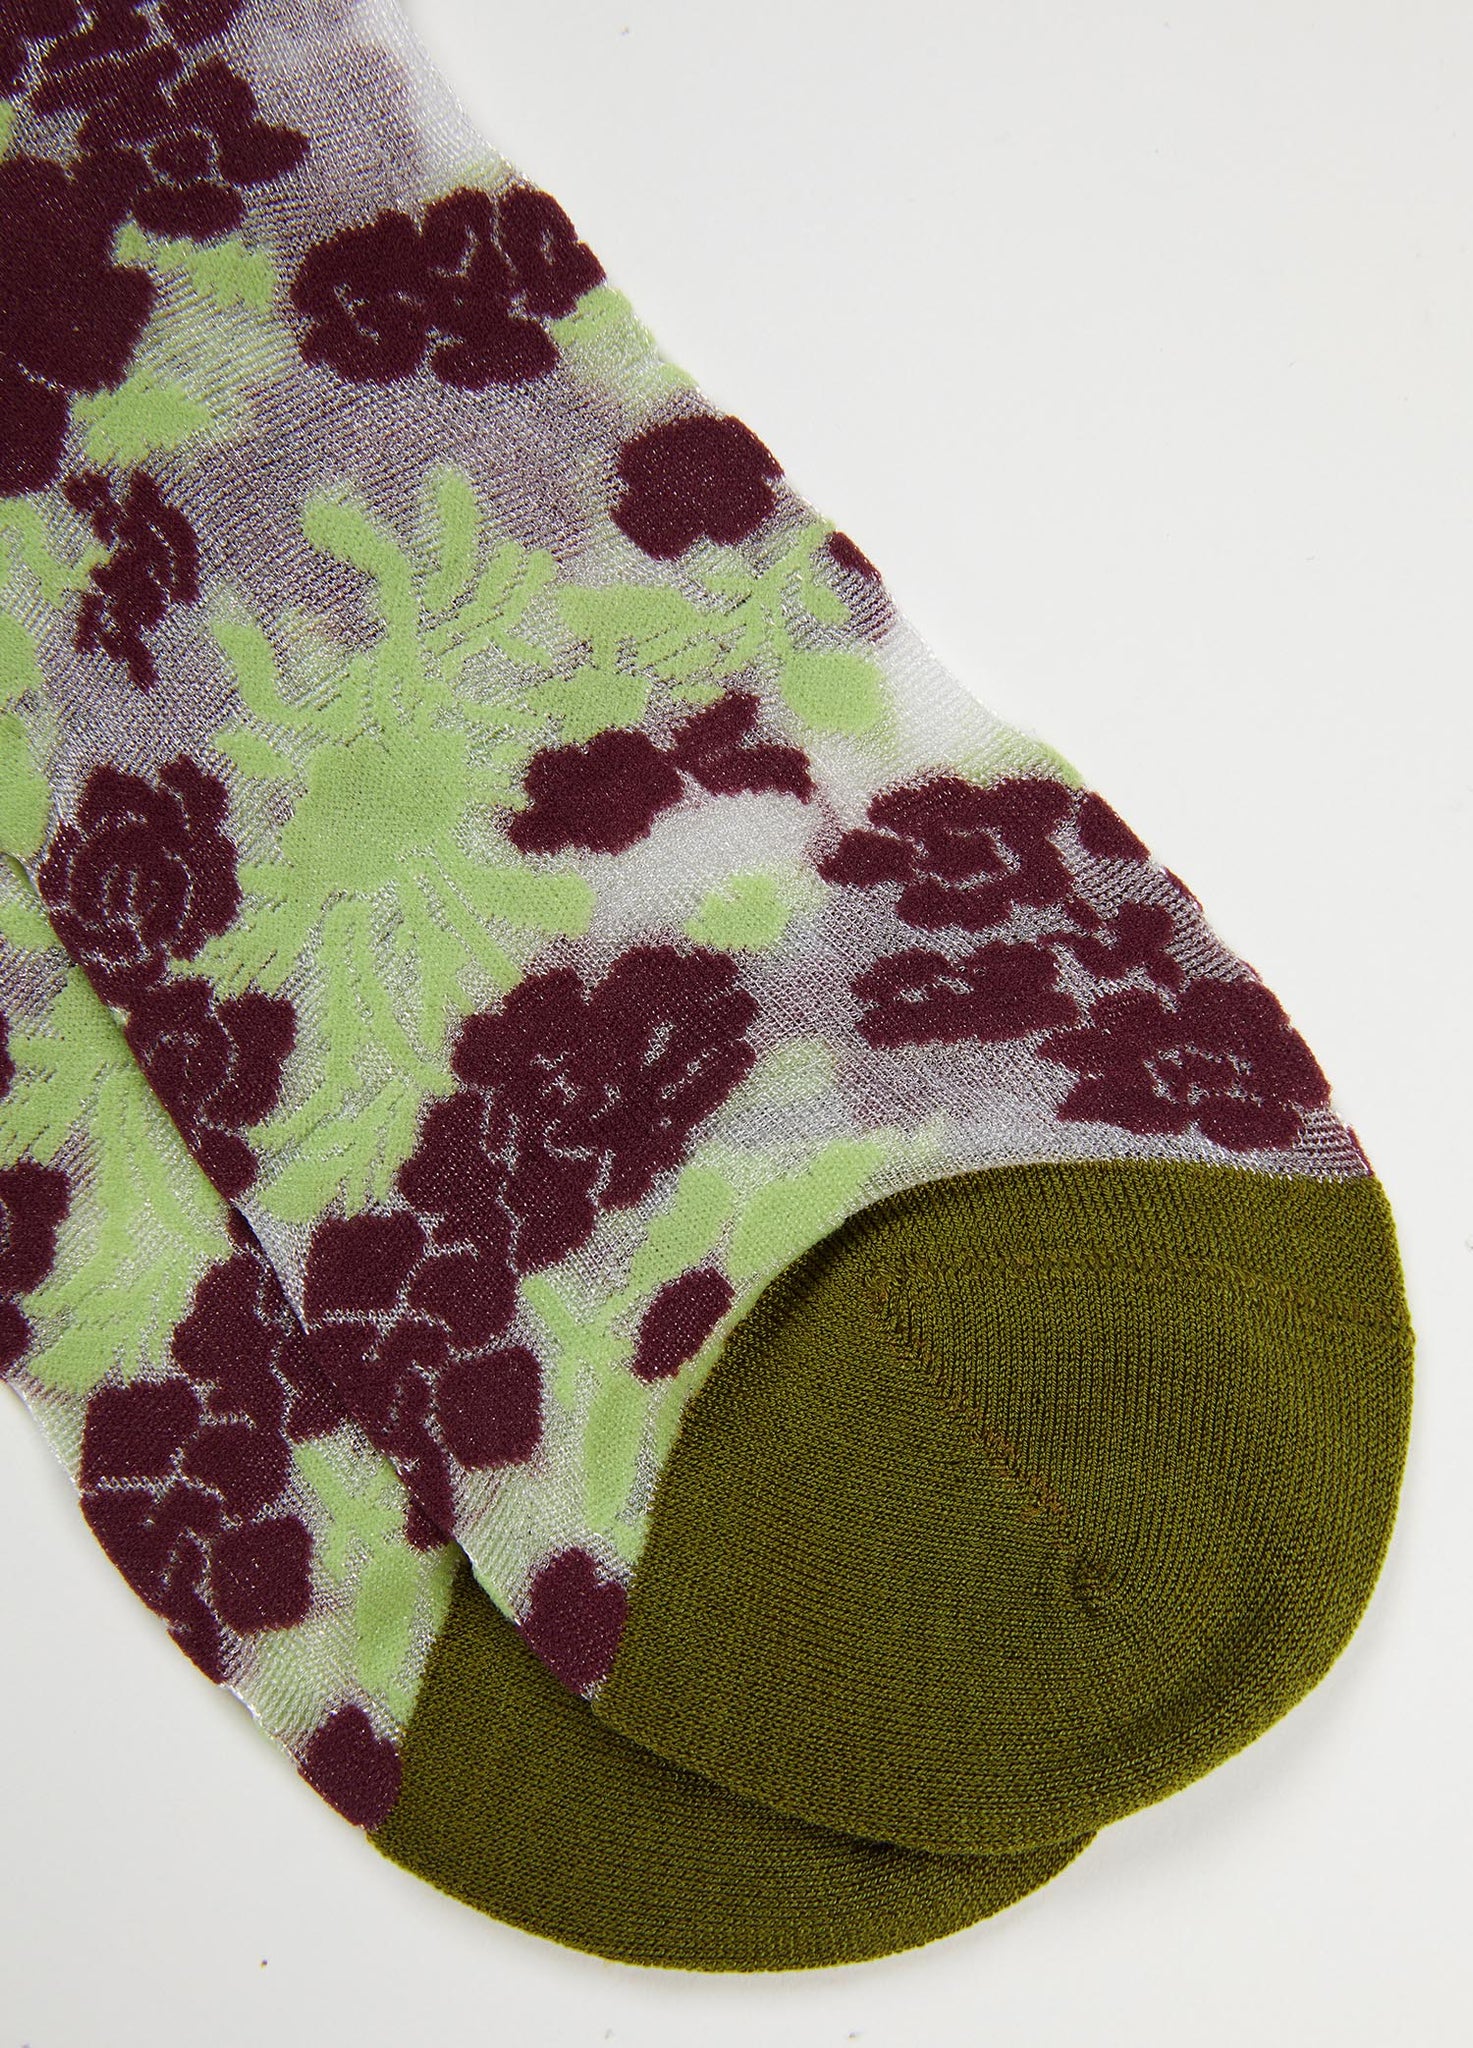 Socks / JNBY Floral Jacquard Socks